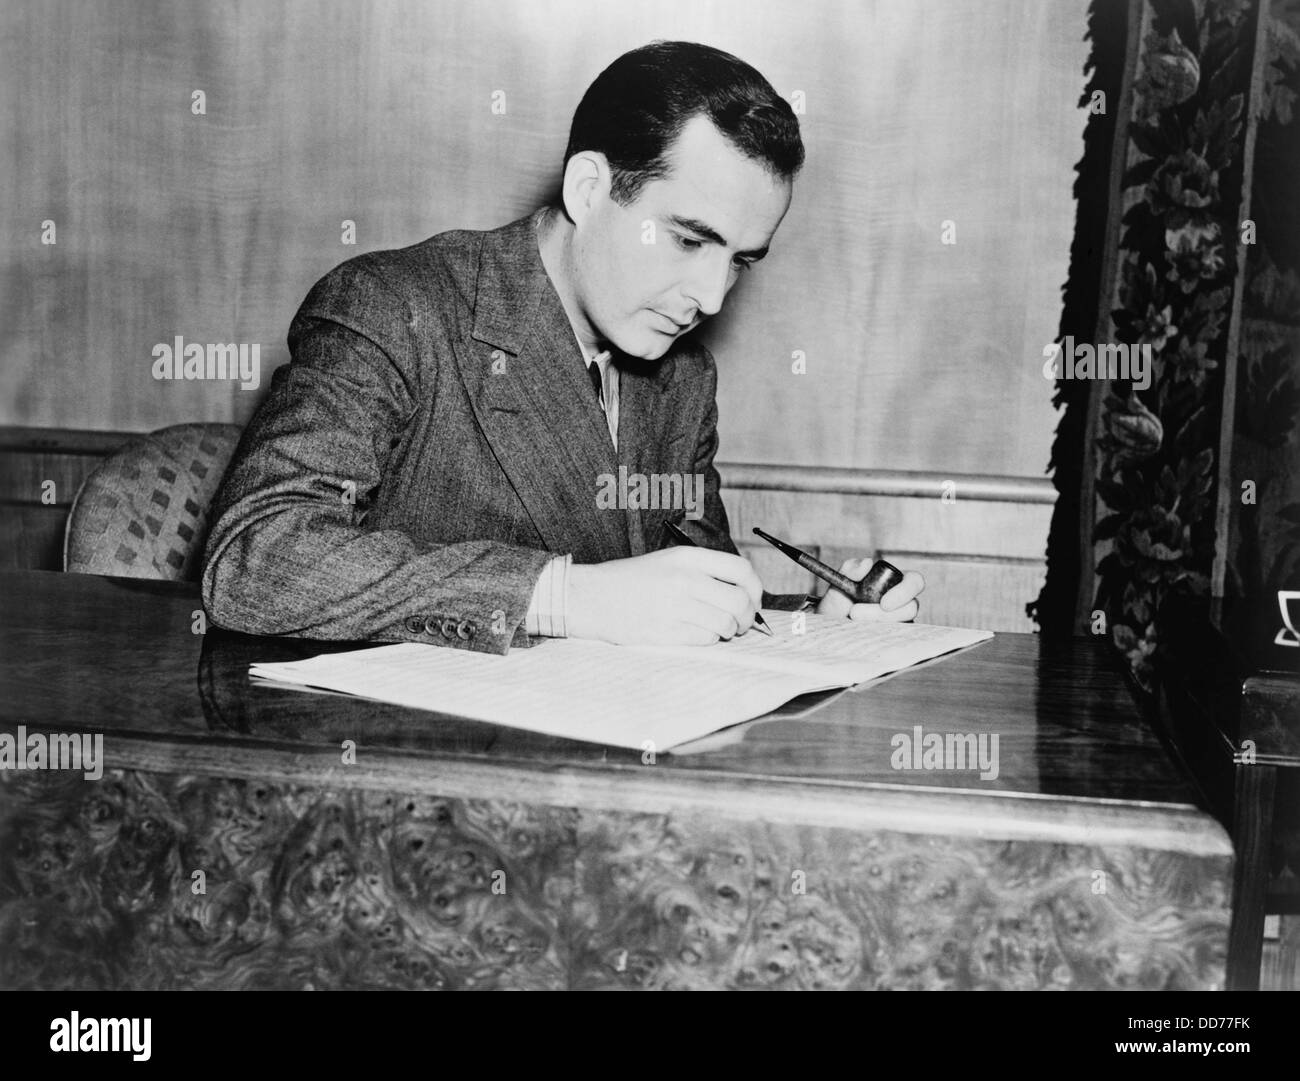 Samuel Barber, compositeur américain de musique orchestrale, opéra, chant choral, piano et musique. Oct 26, 1938. (BSLOC 2013 9 15) Banque D'Images